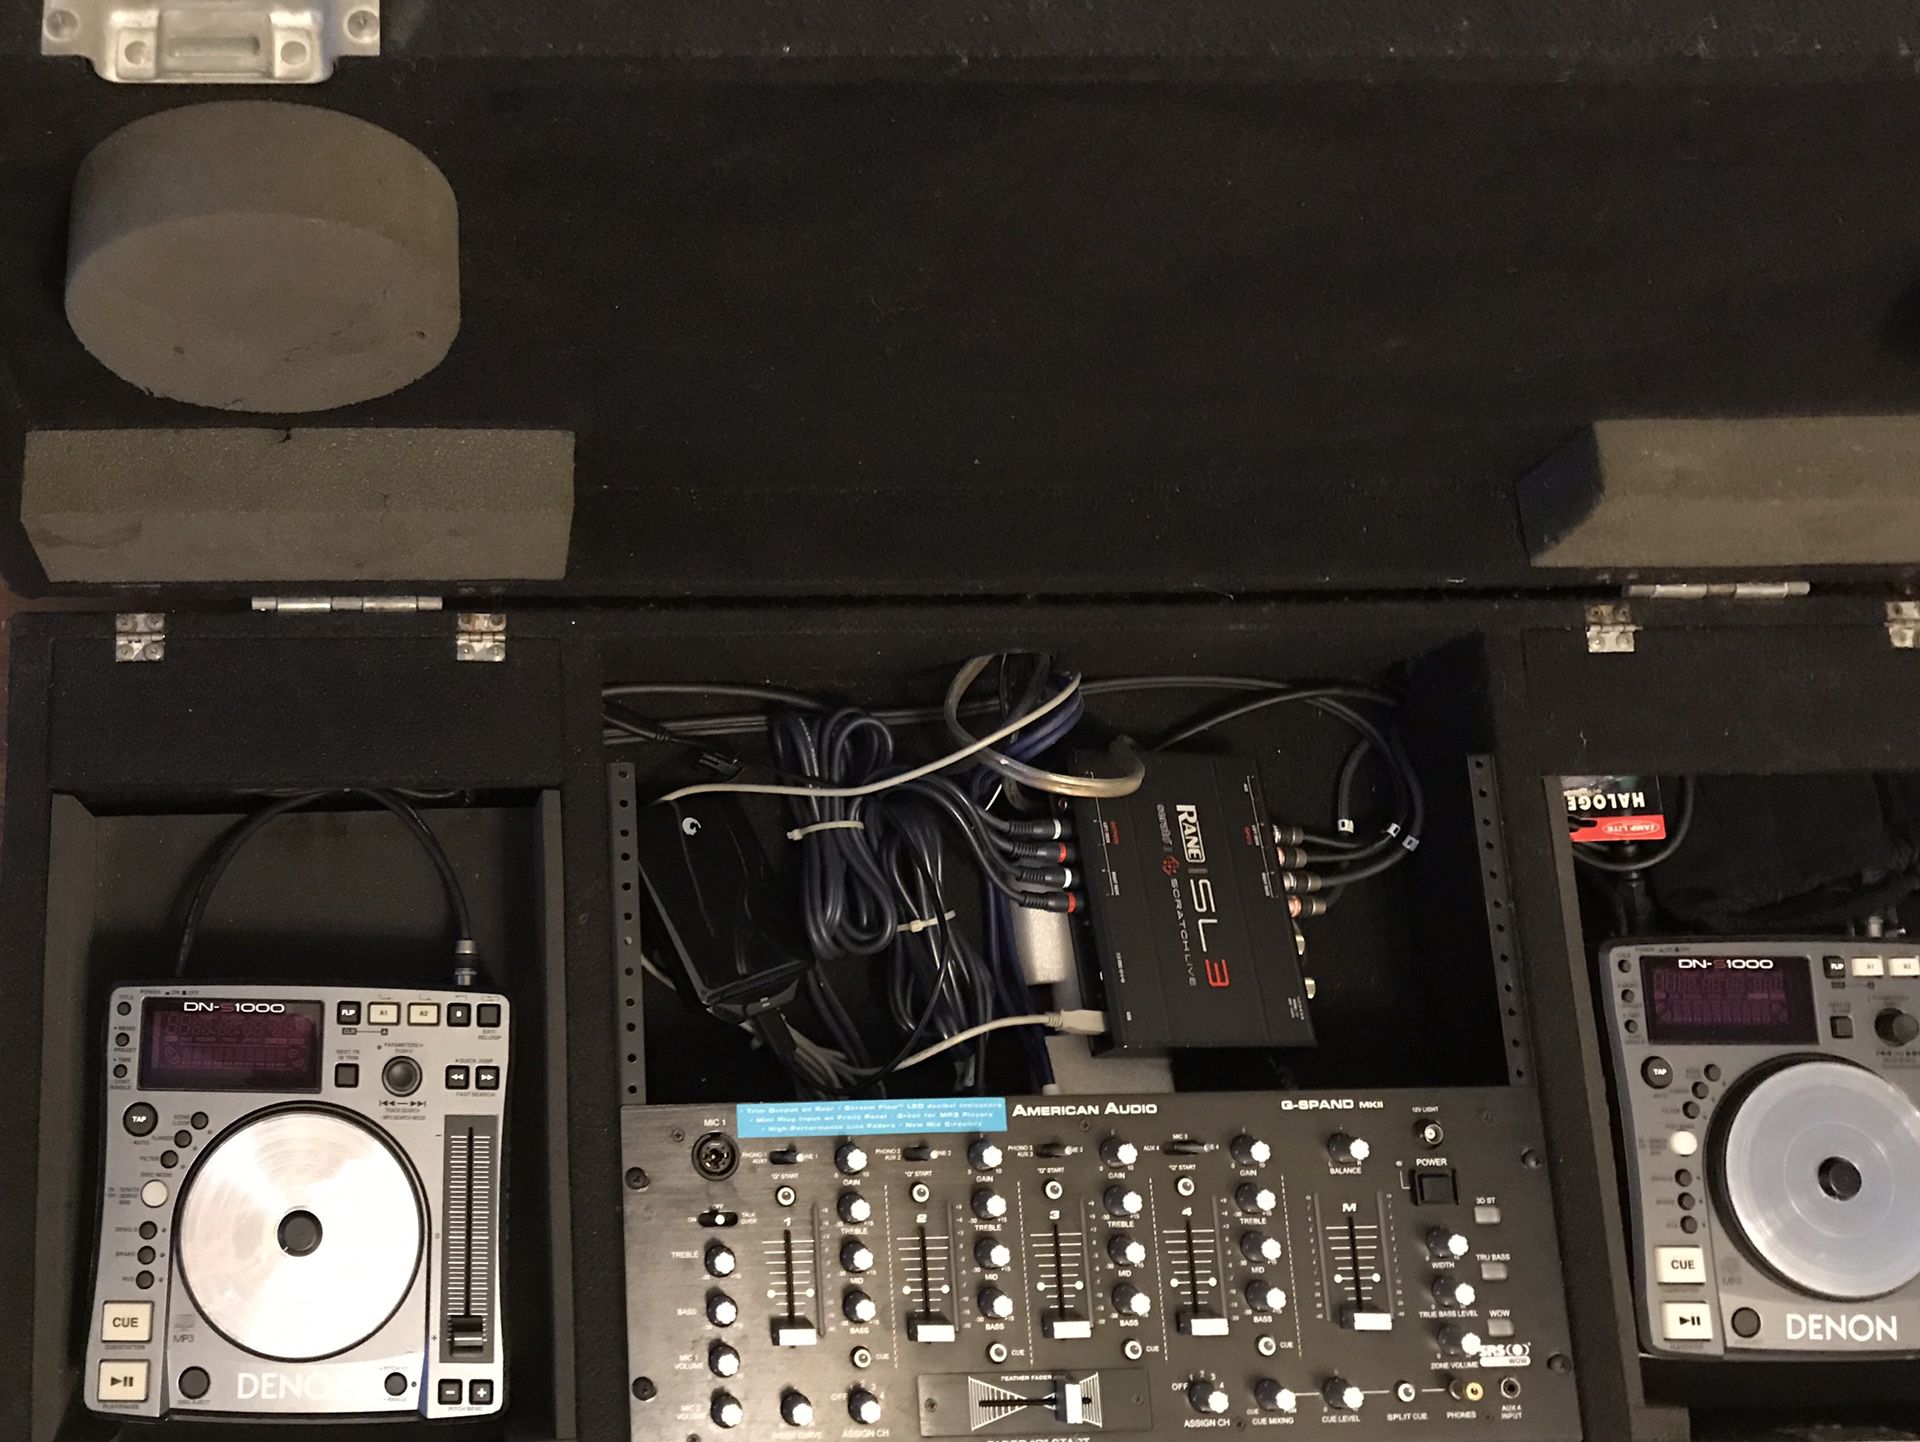 DJ equipment, Denon, American audio, Rane Serato SL3, Odyssey coffin case.